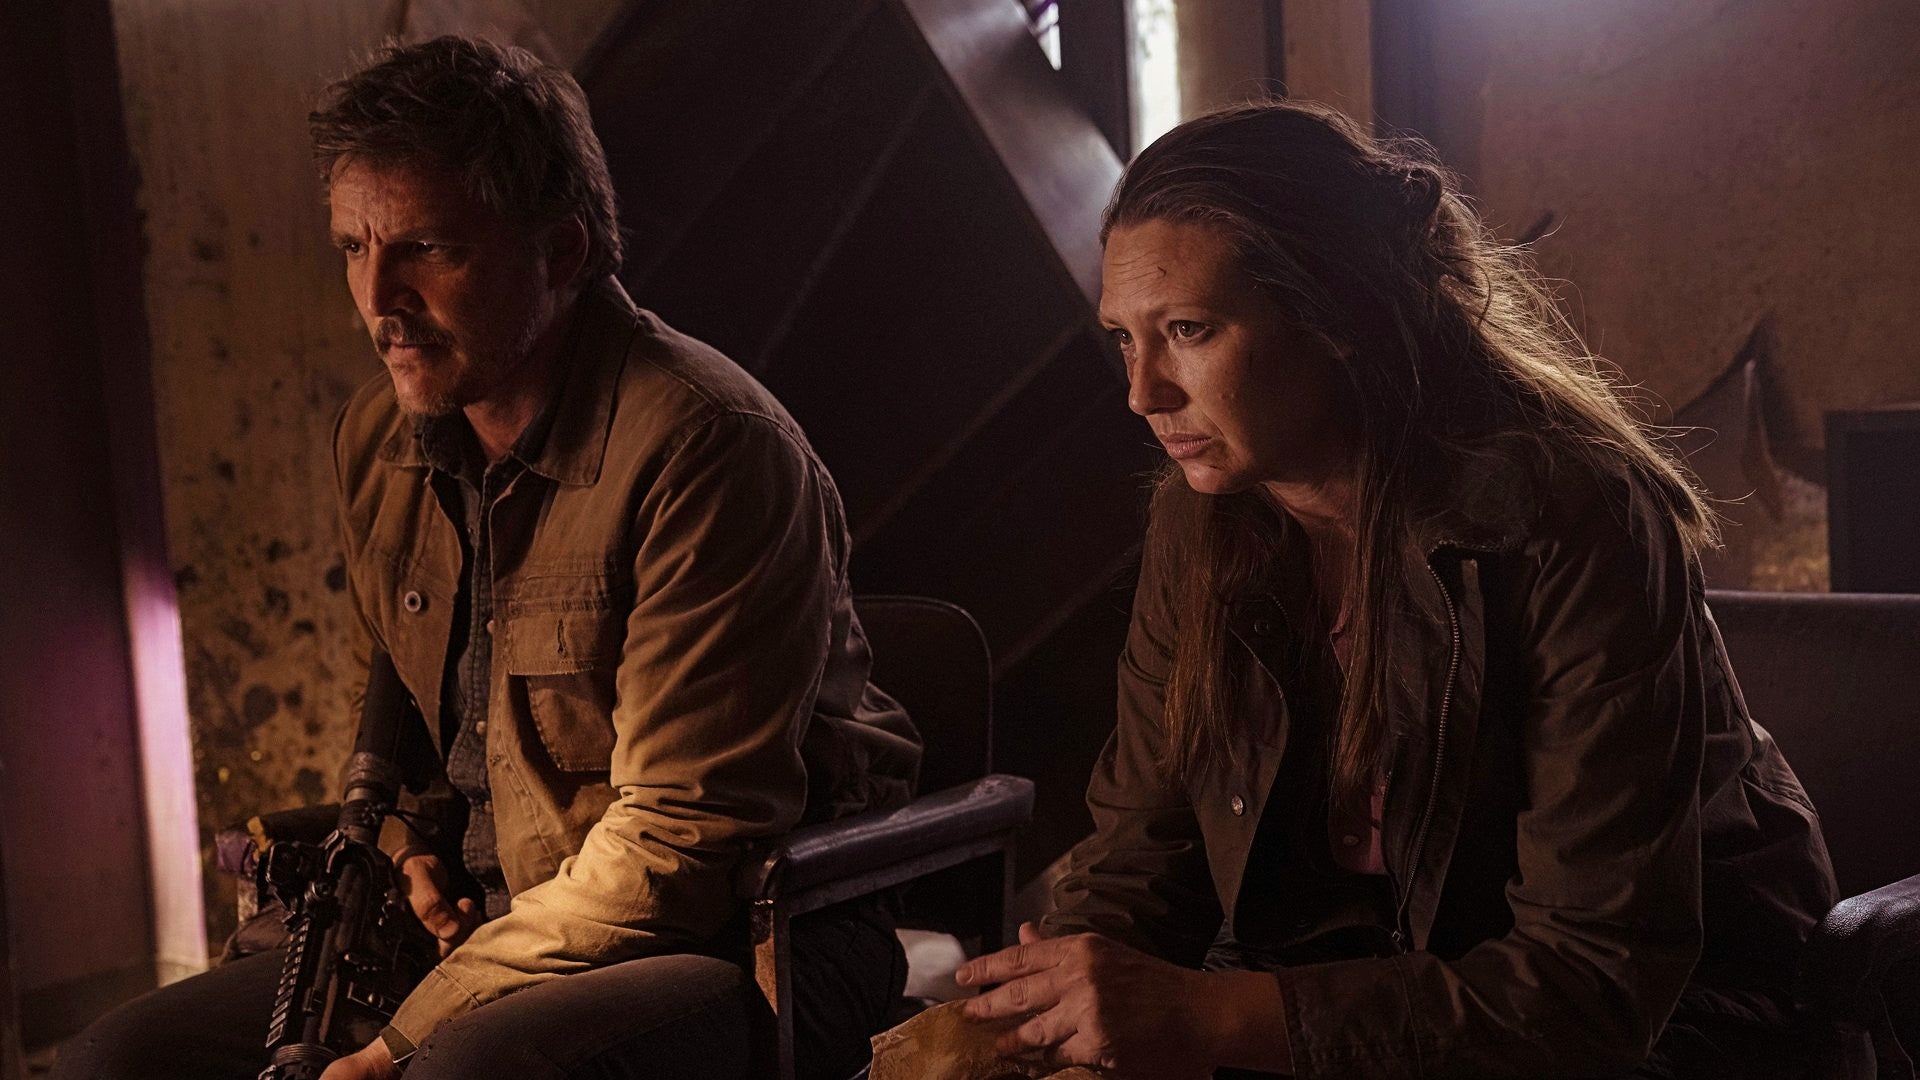 Bilder zu HBOs The Last of Us Folge 1: Alles, was es sein musste und mehr – aber wollt ihr es auch?